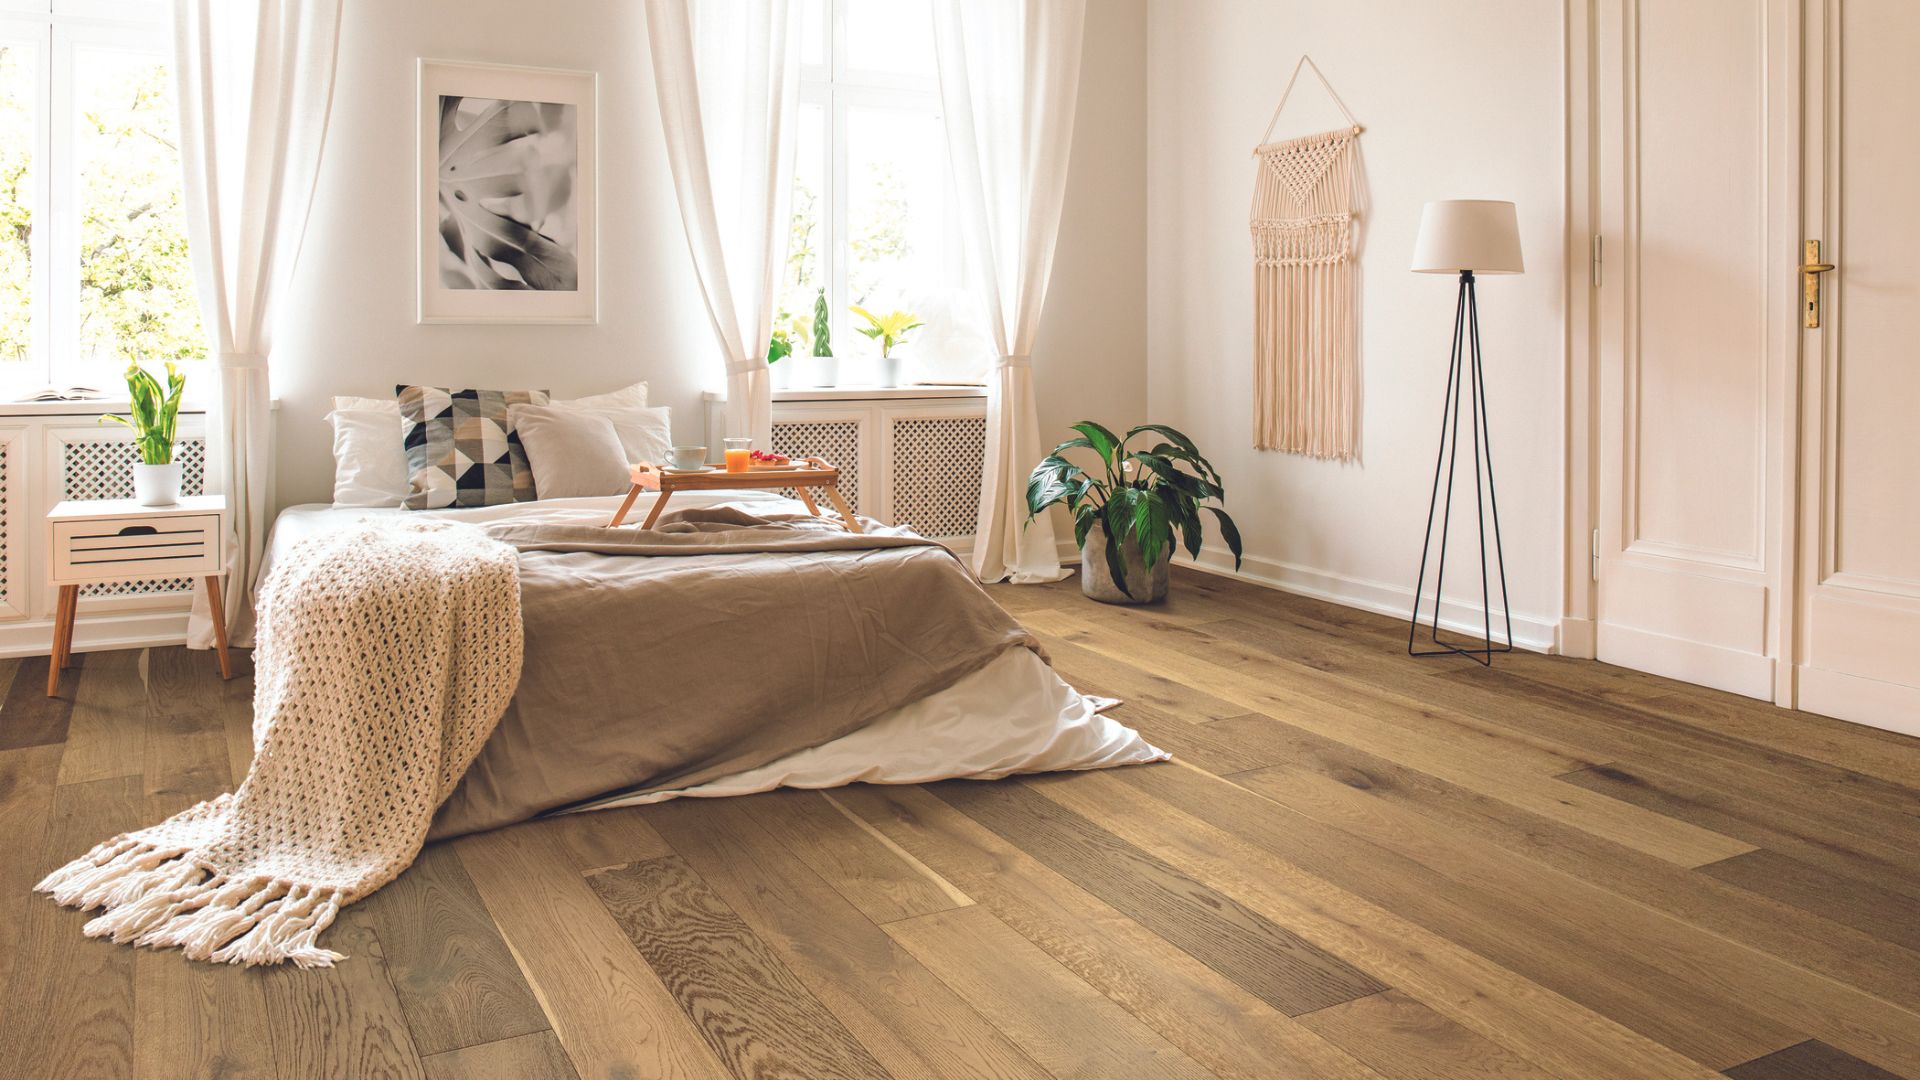 Laminate wood flooring in a bedroom.